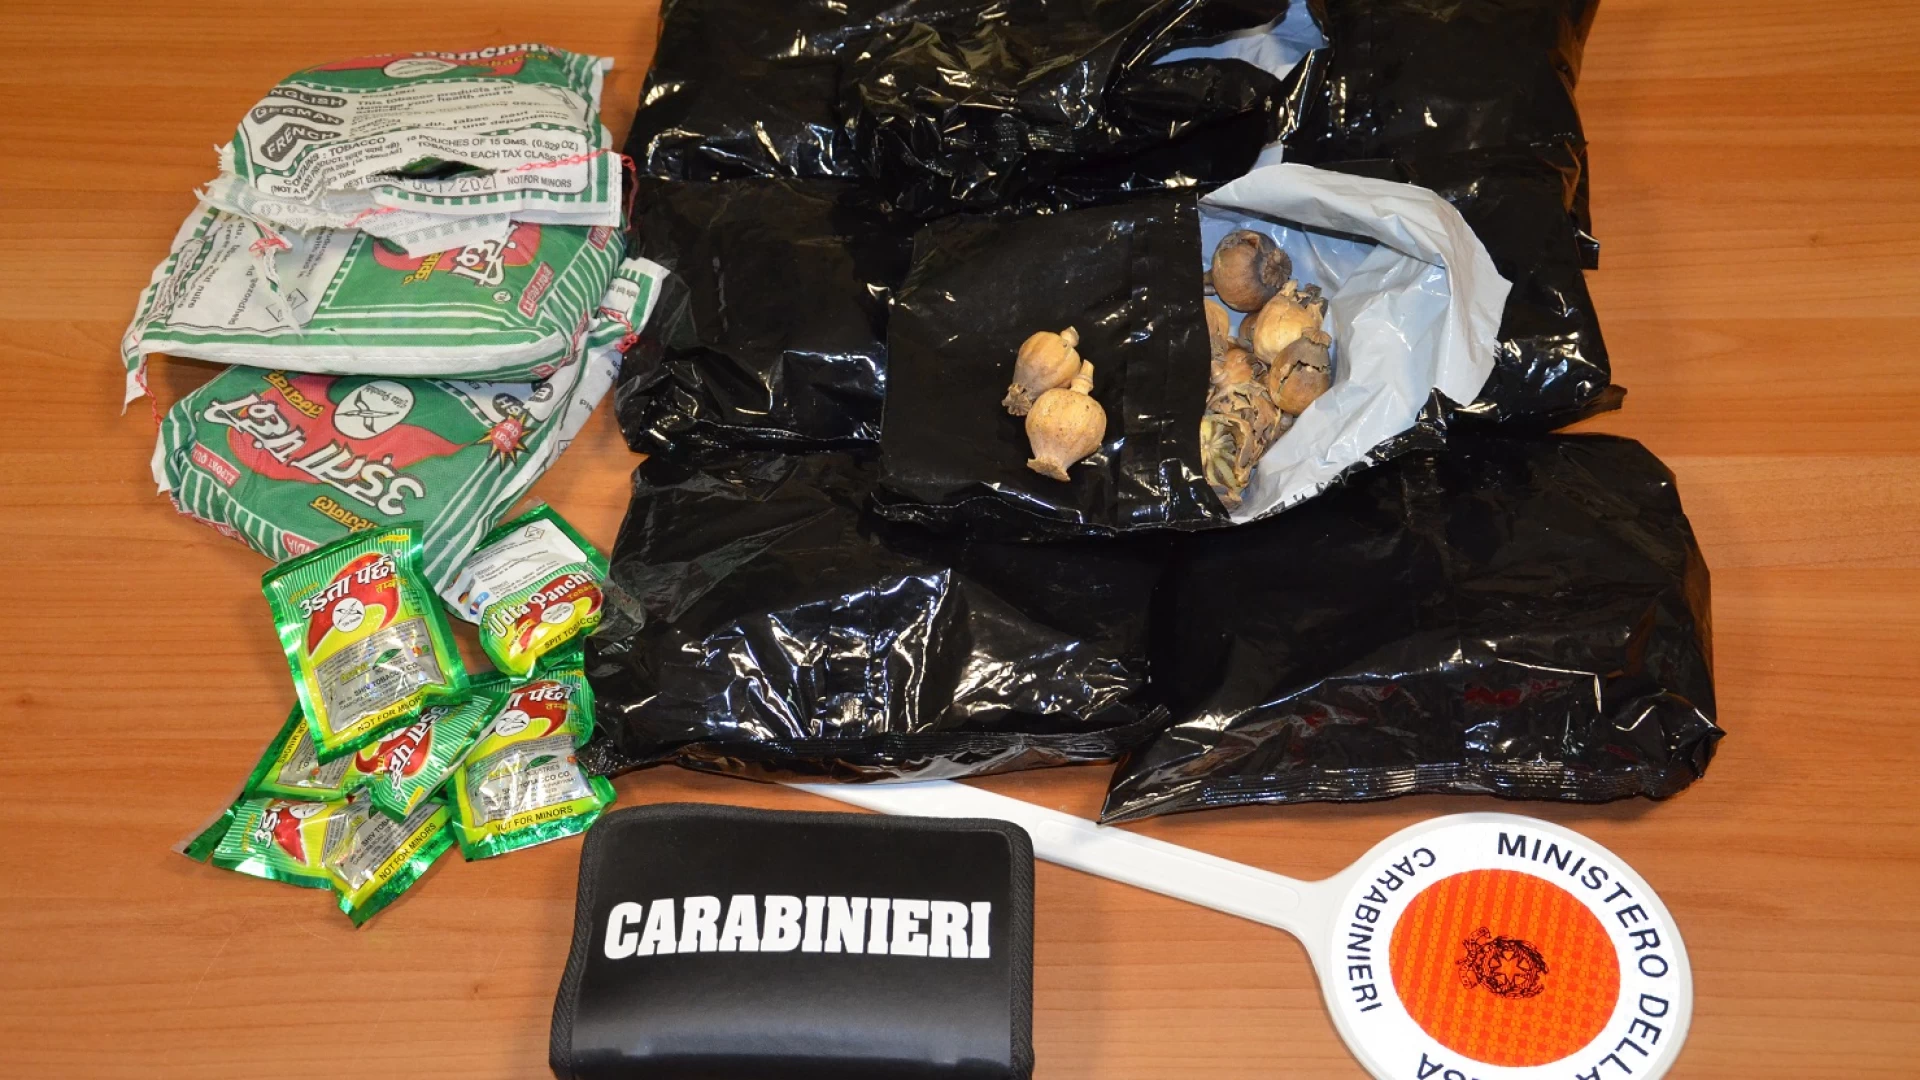 Venafro: Carabinieri sequestrano borsa contenente 8 capsule essiccate di papavero da oppio.